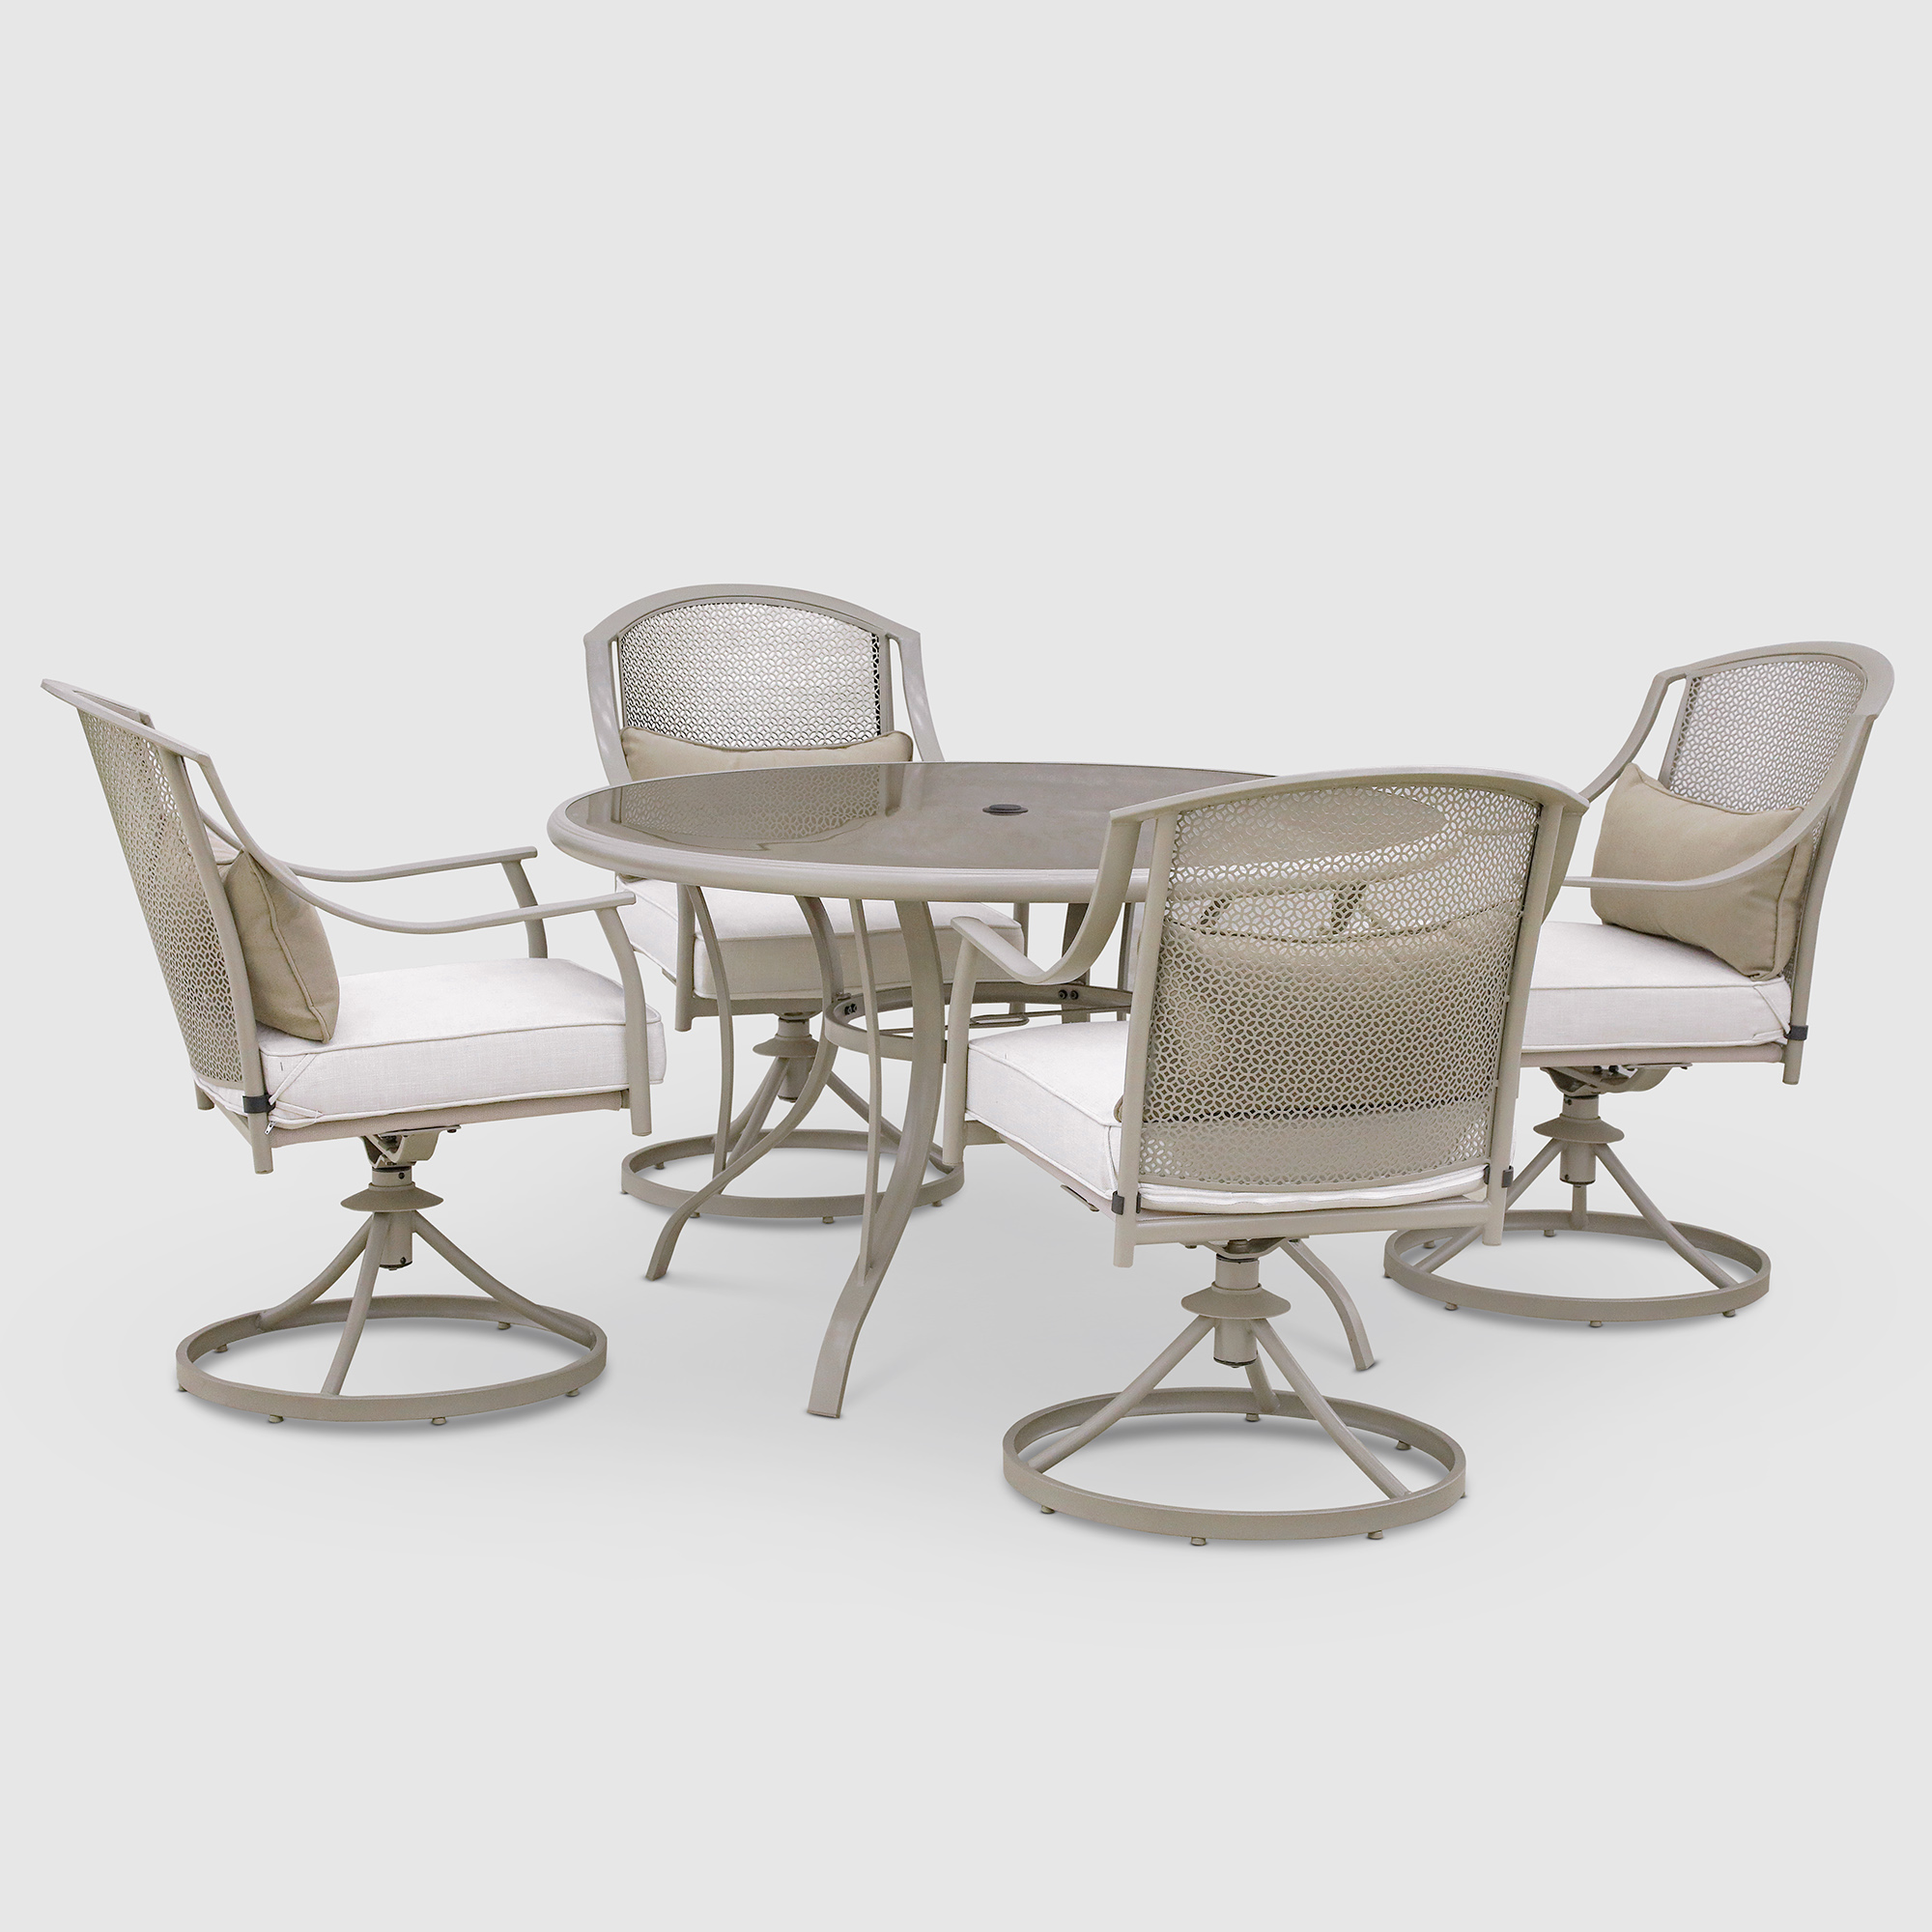 Комплект мебели Greenpatio с вращающимися стульями 5 предметов, цвет тауп, размер 122х70